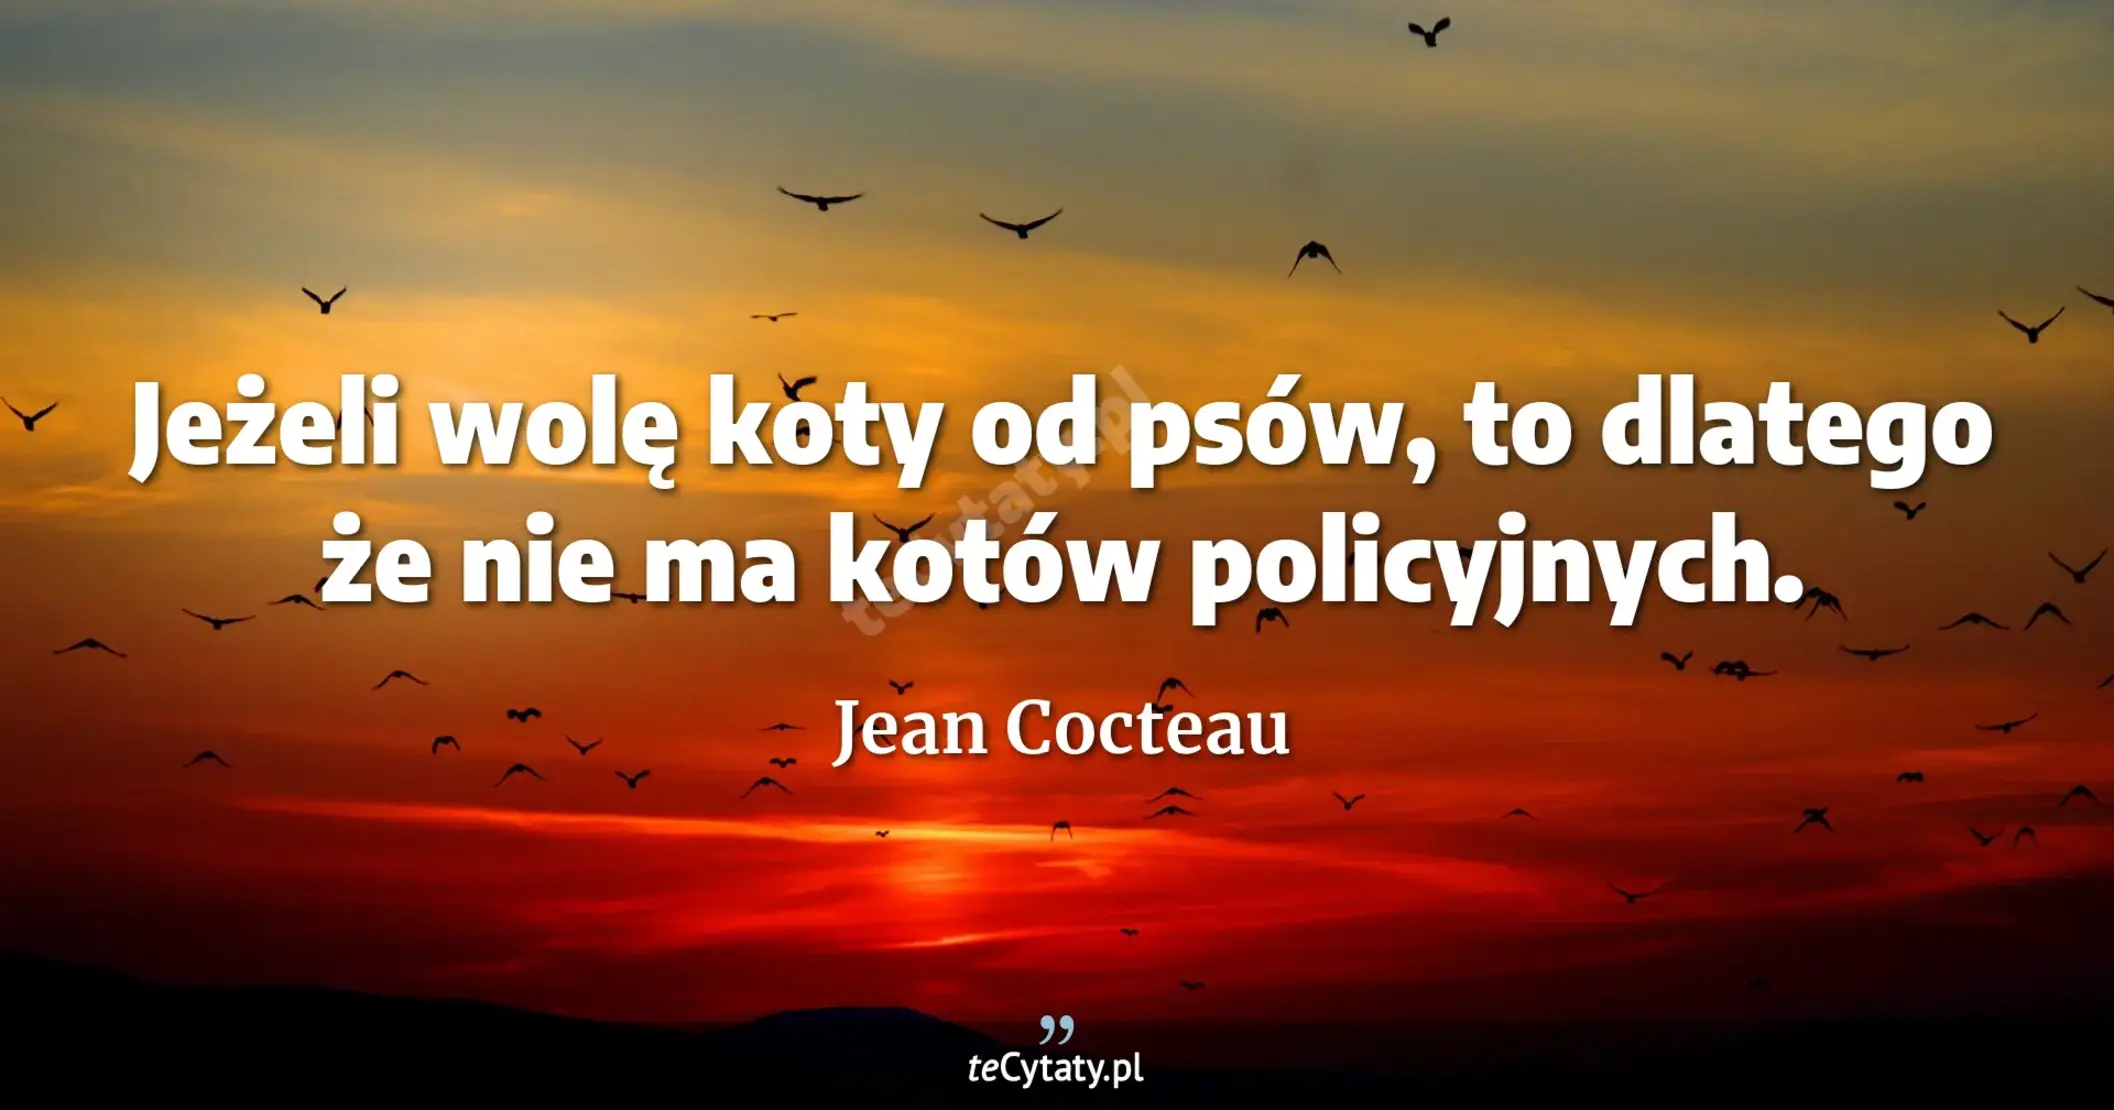 Jeżeli wolę koty od psów, to dlatego że nie ma kotów policyjnych. - Jean Cocteau